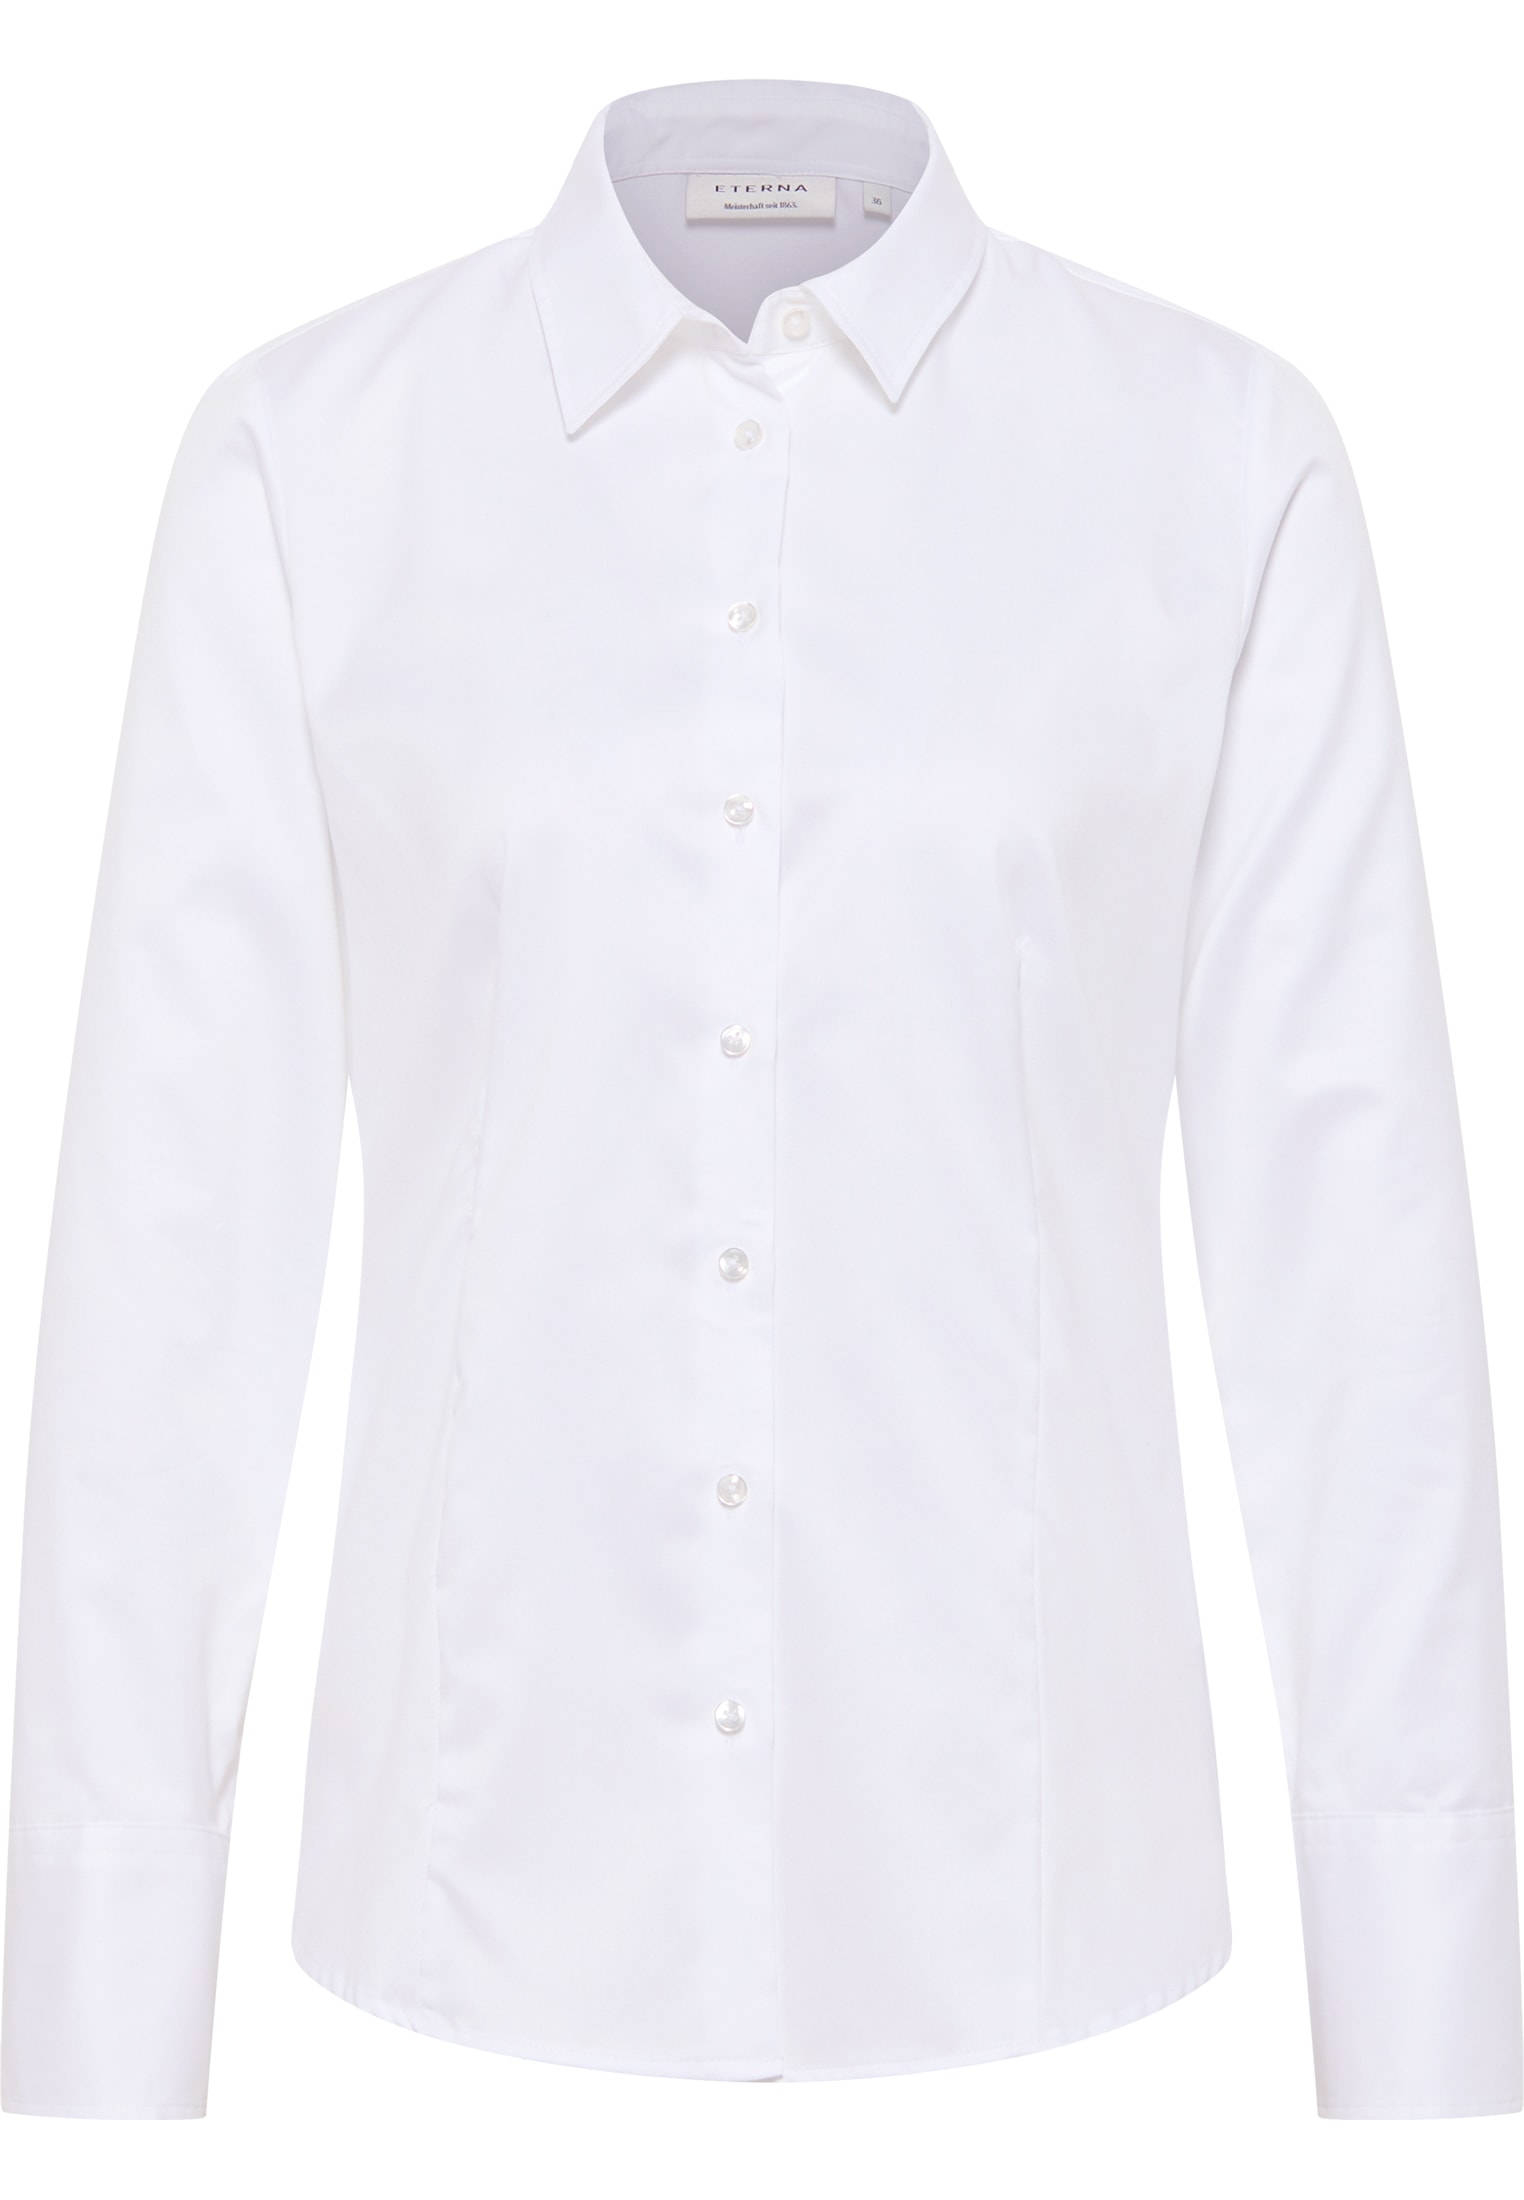 Cover Shirt sleeve | 38 | plain white white in Blouse | long | 2BL00075-00-01-38-1/1